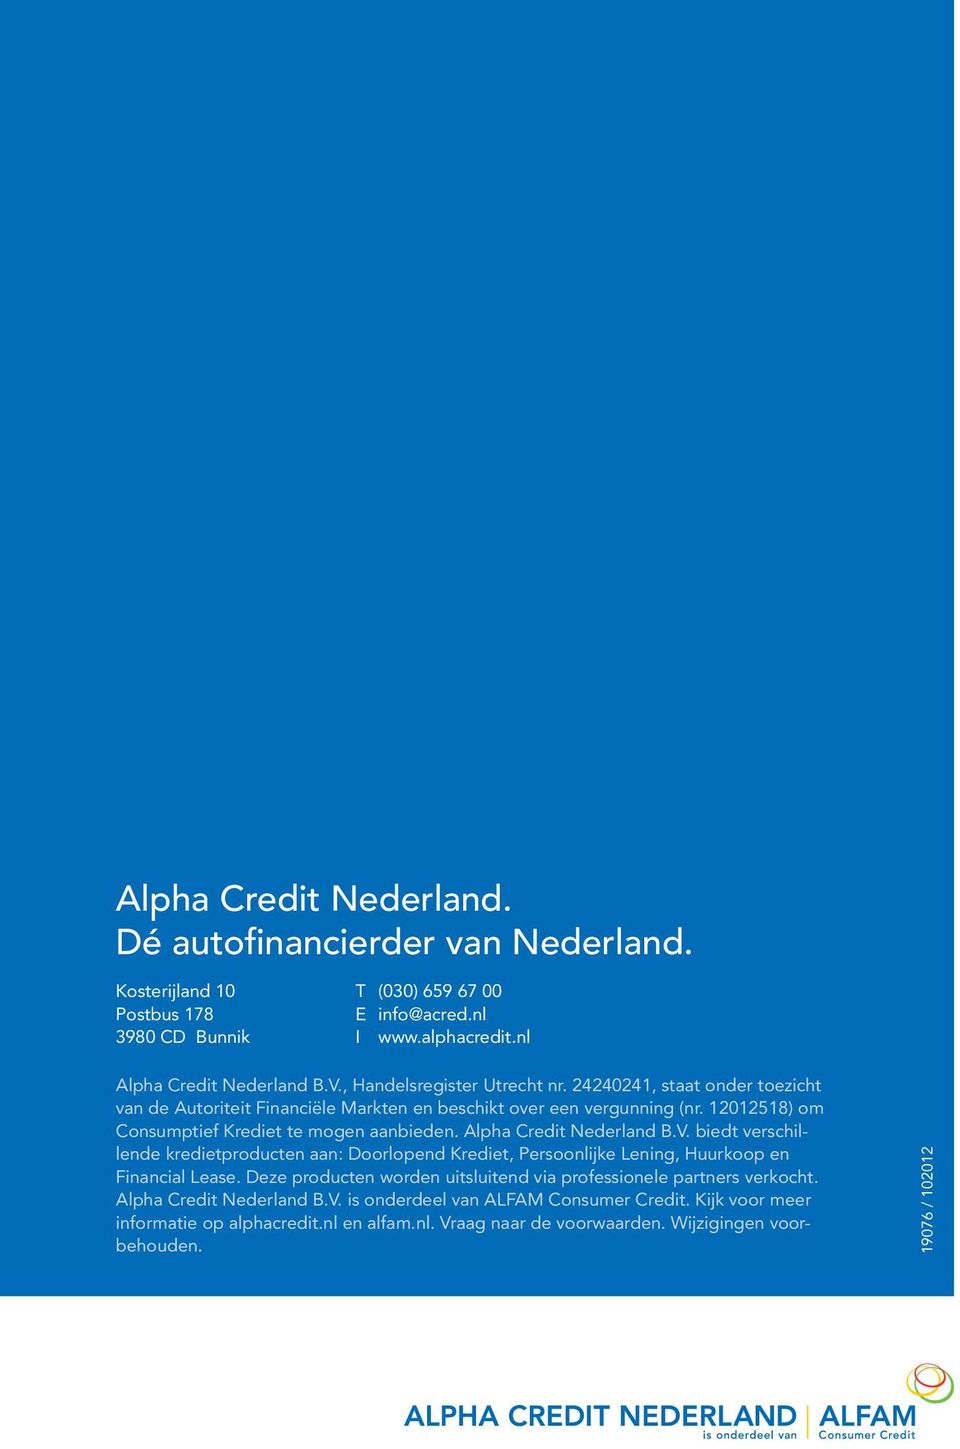 Alpha Credit Nederland B.V. biedt verschillende kredietproducten aan: Doorlopend Krediet, Persoonlijke Lening, Huurkoop en Financial Lease.